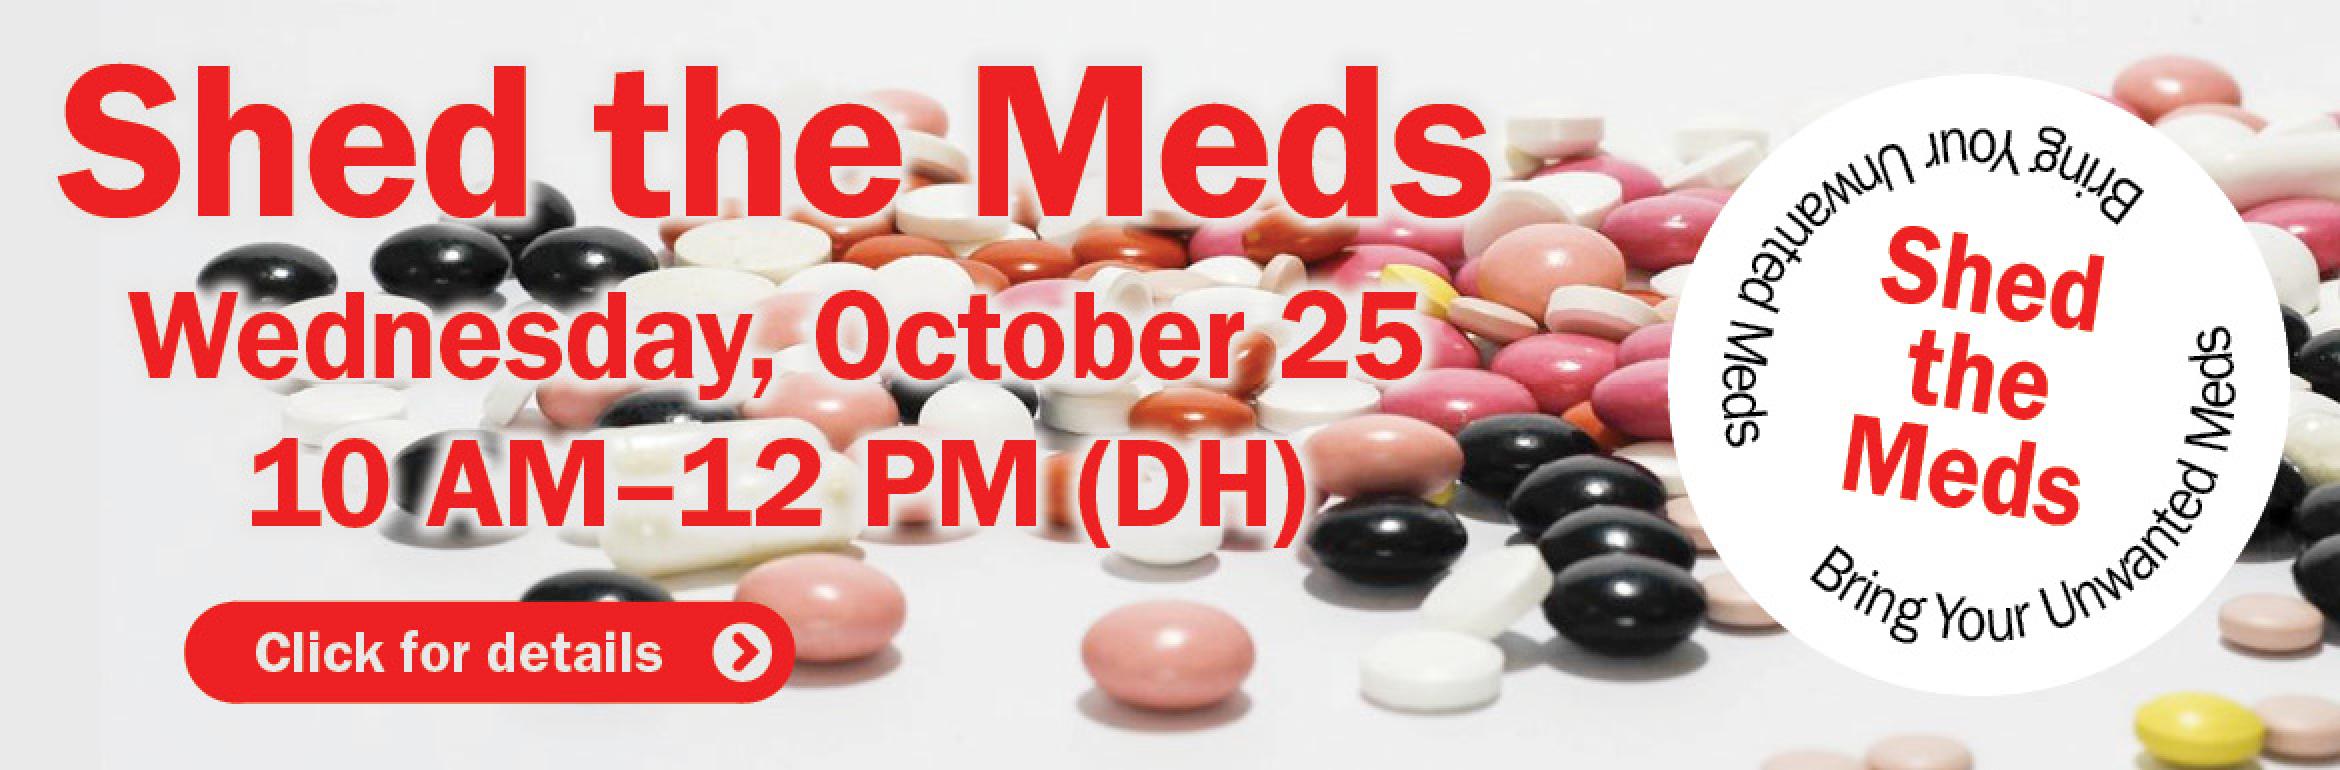 Shed the Meds. Wednesday, October  25. 10 AM–12 PM (DH). Bring Your Unwanted Meds - Shed the Meds - Bring Your Unwanted Meds. Click for details.